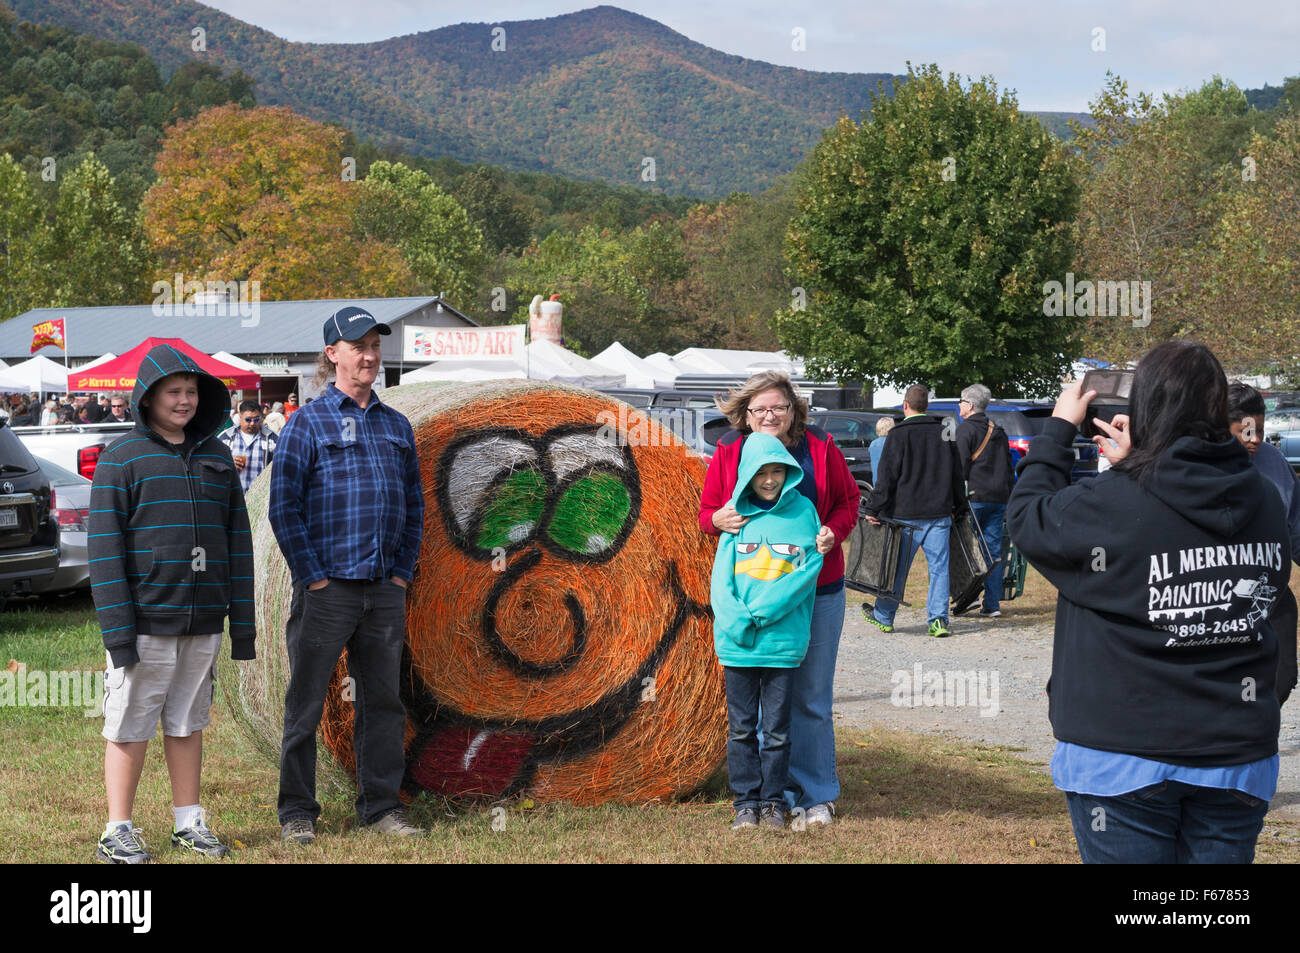 Toma de fotografía familiar, fosas' Festival de la cosecha de manzana de montaña, Virginia, EE.UU. Foto de stock